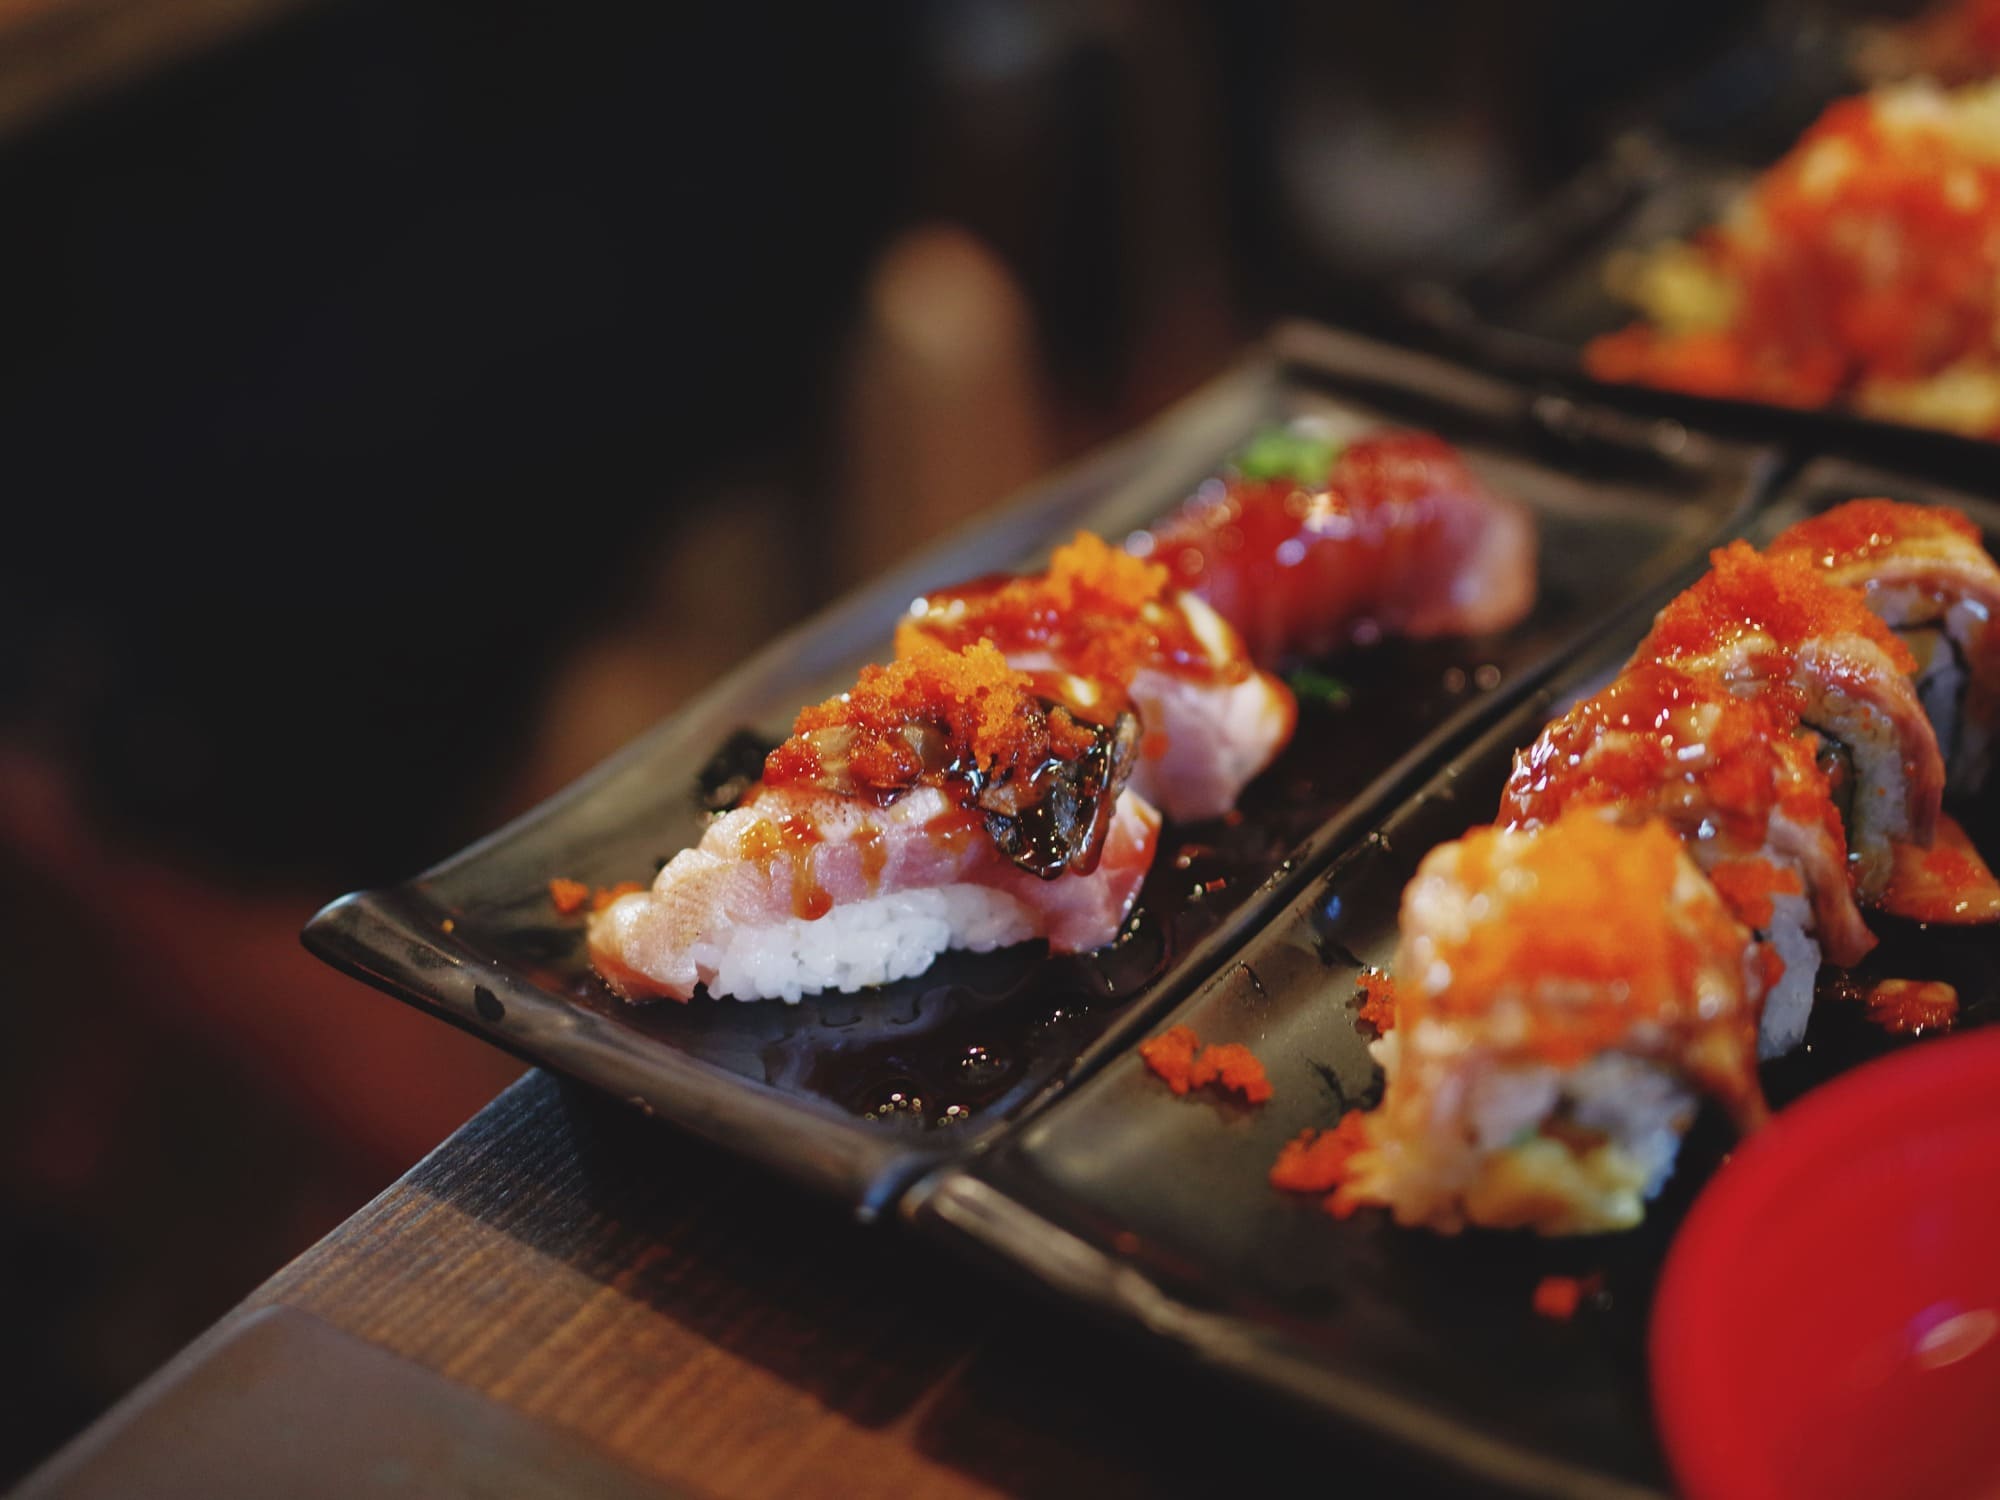 Imagen de sushi contemporáneo con una presentación artística, combinando ingredientes frescos y sabores audaces en cada pieza